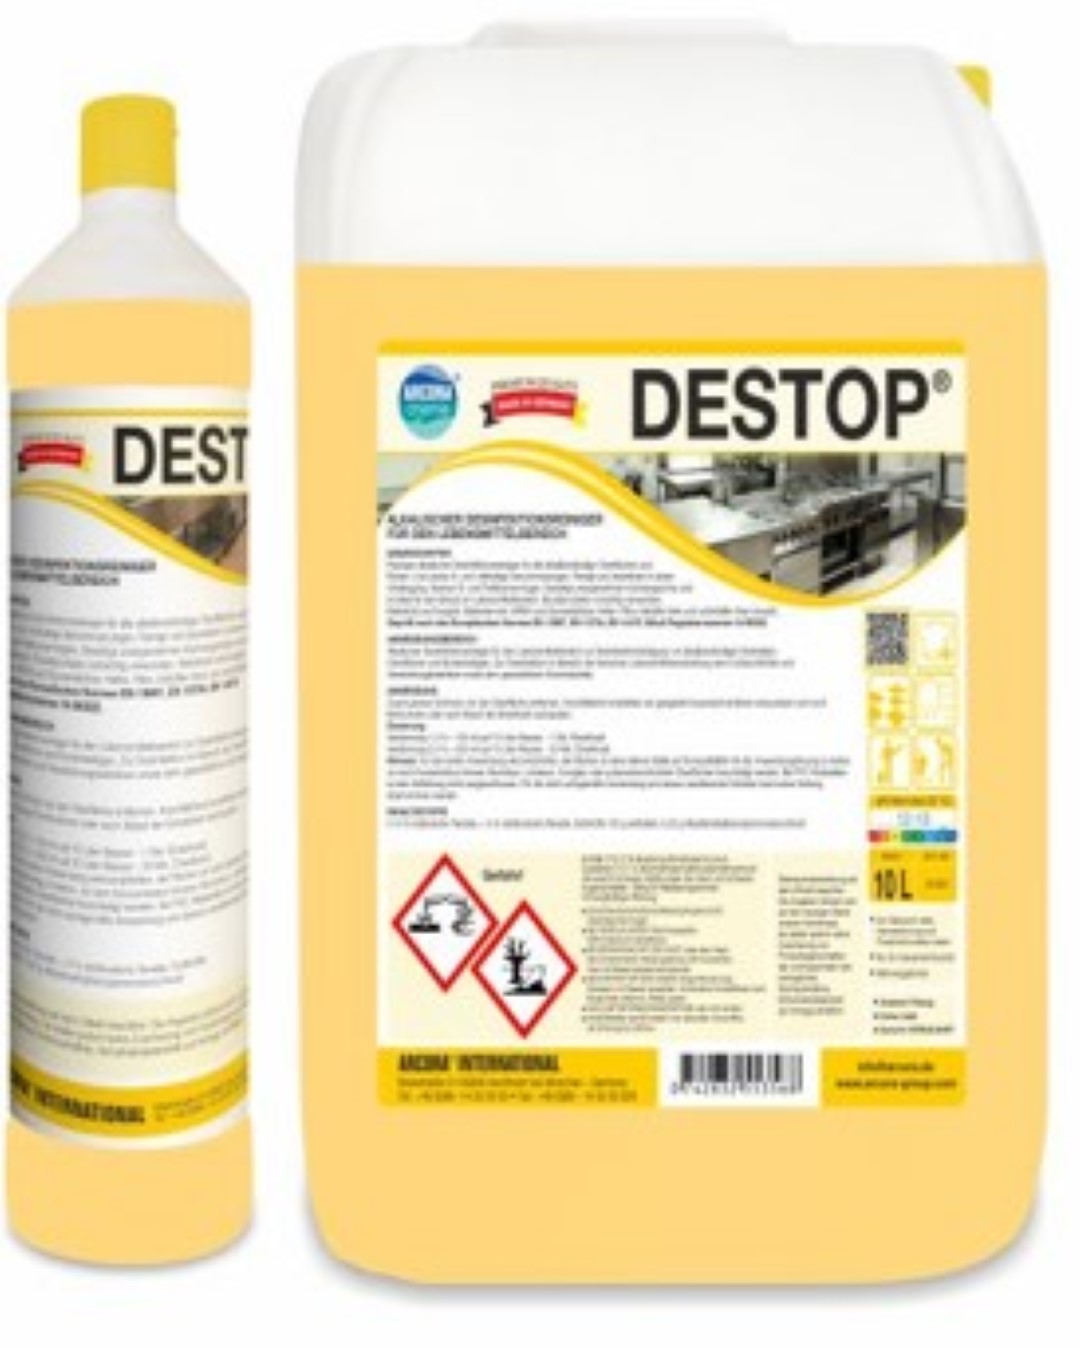 Destop | Alkalischer Desinfektionsreiniger | 1 Liter Flasche